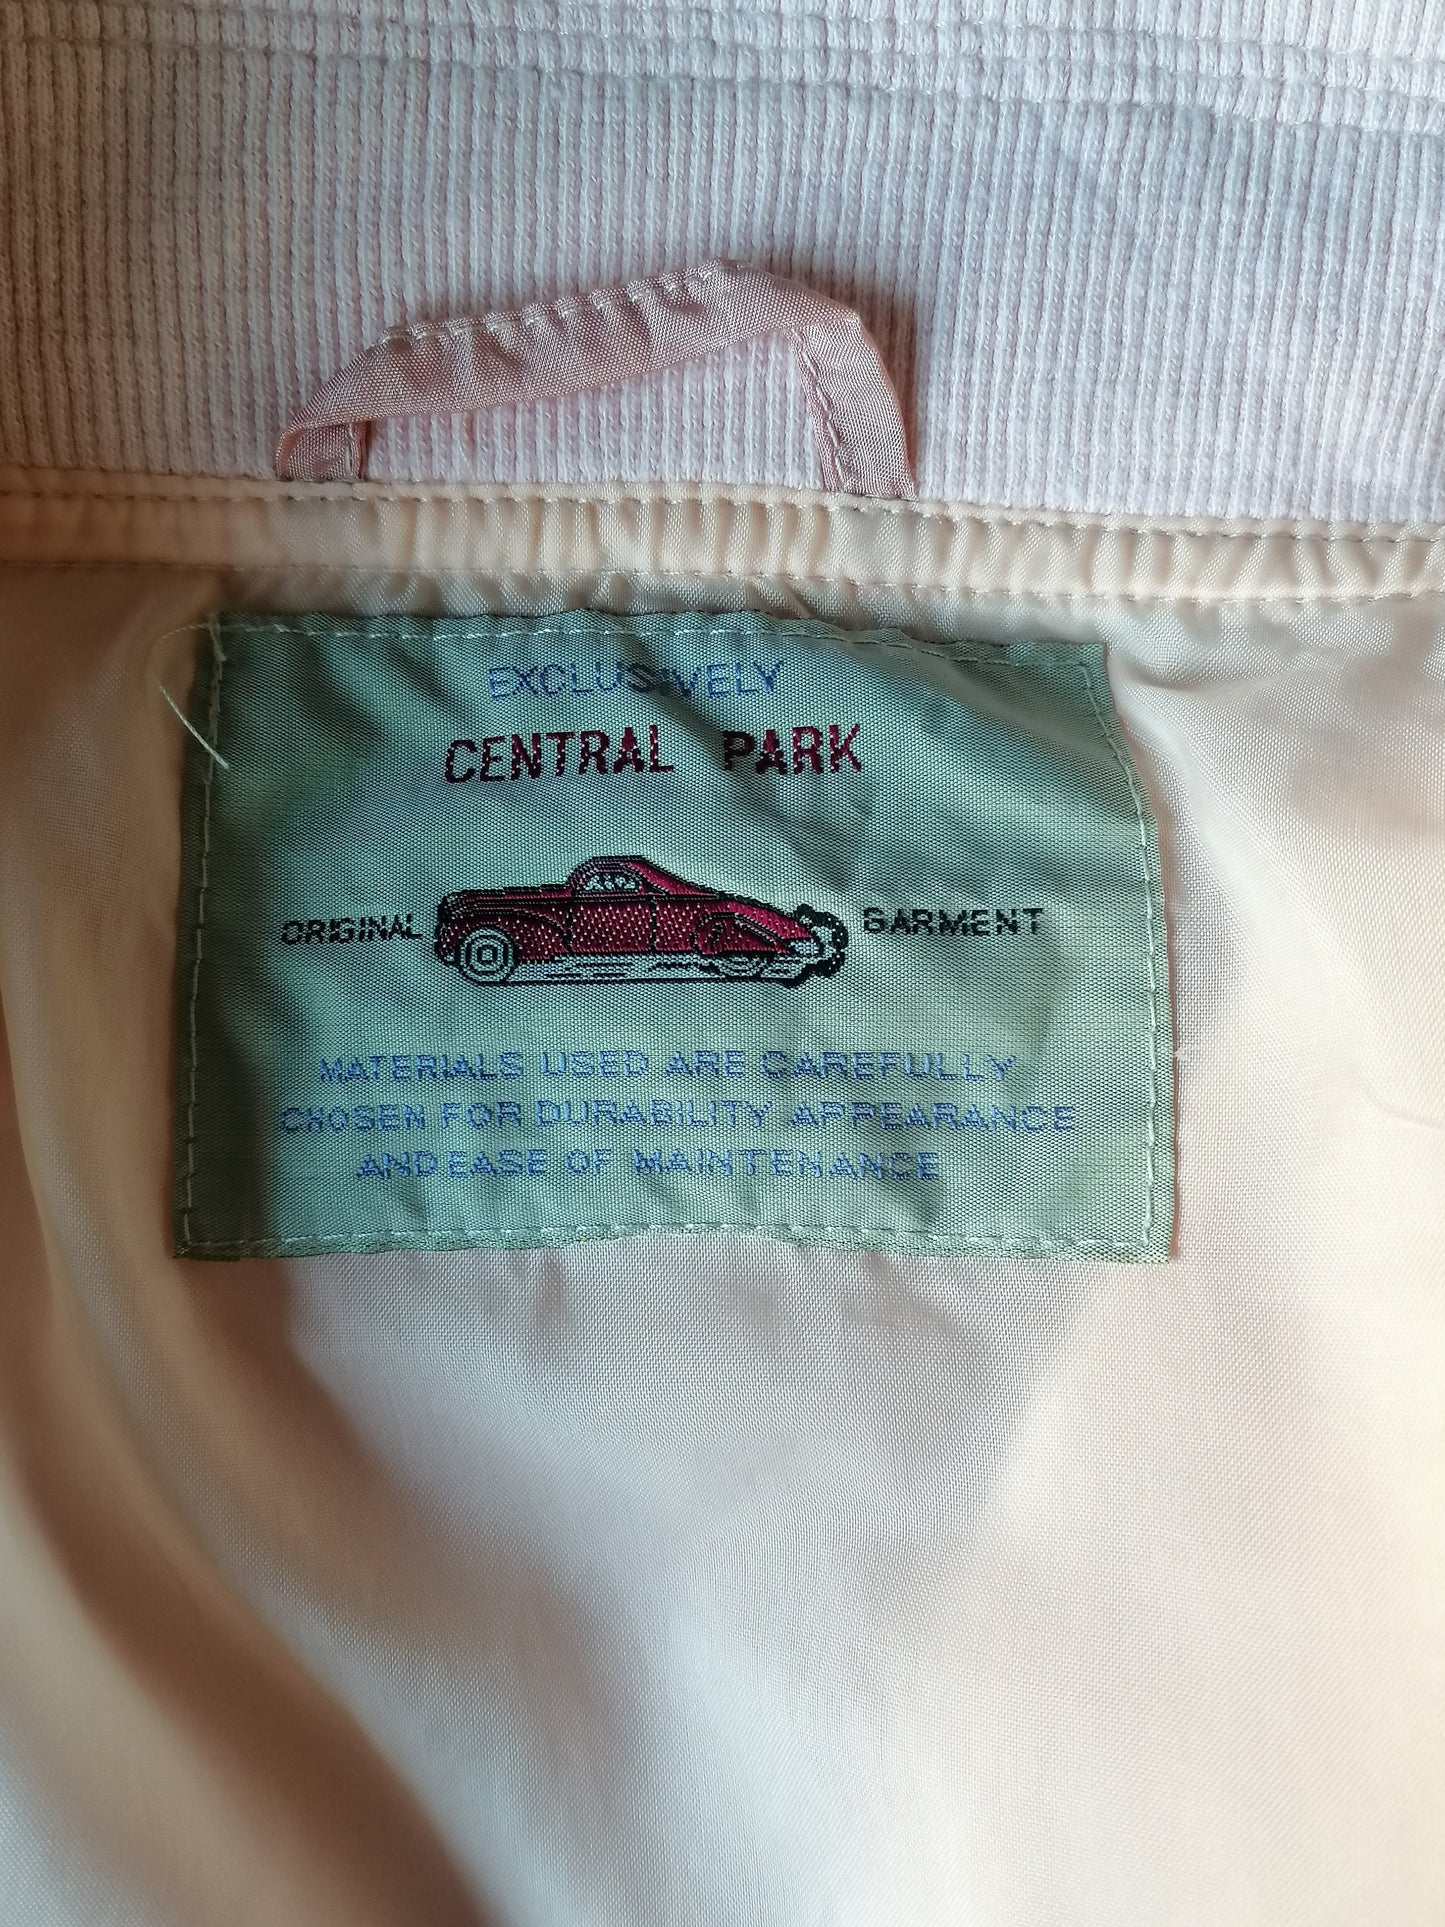 Vintage Central Park 80's-90's trainingsjack met schoudervullingen. Roze gekleurd. Maat XXL / 2XL.